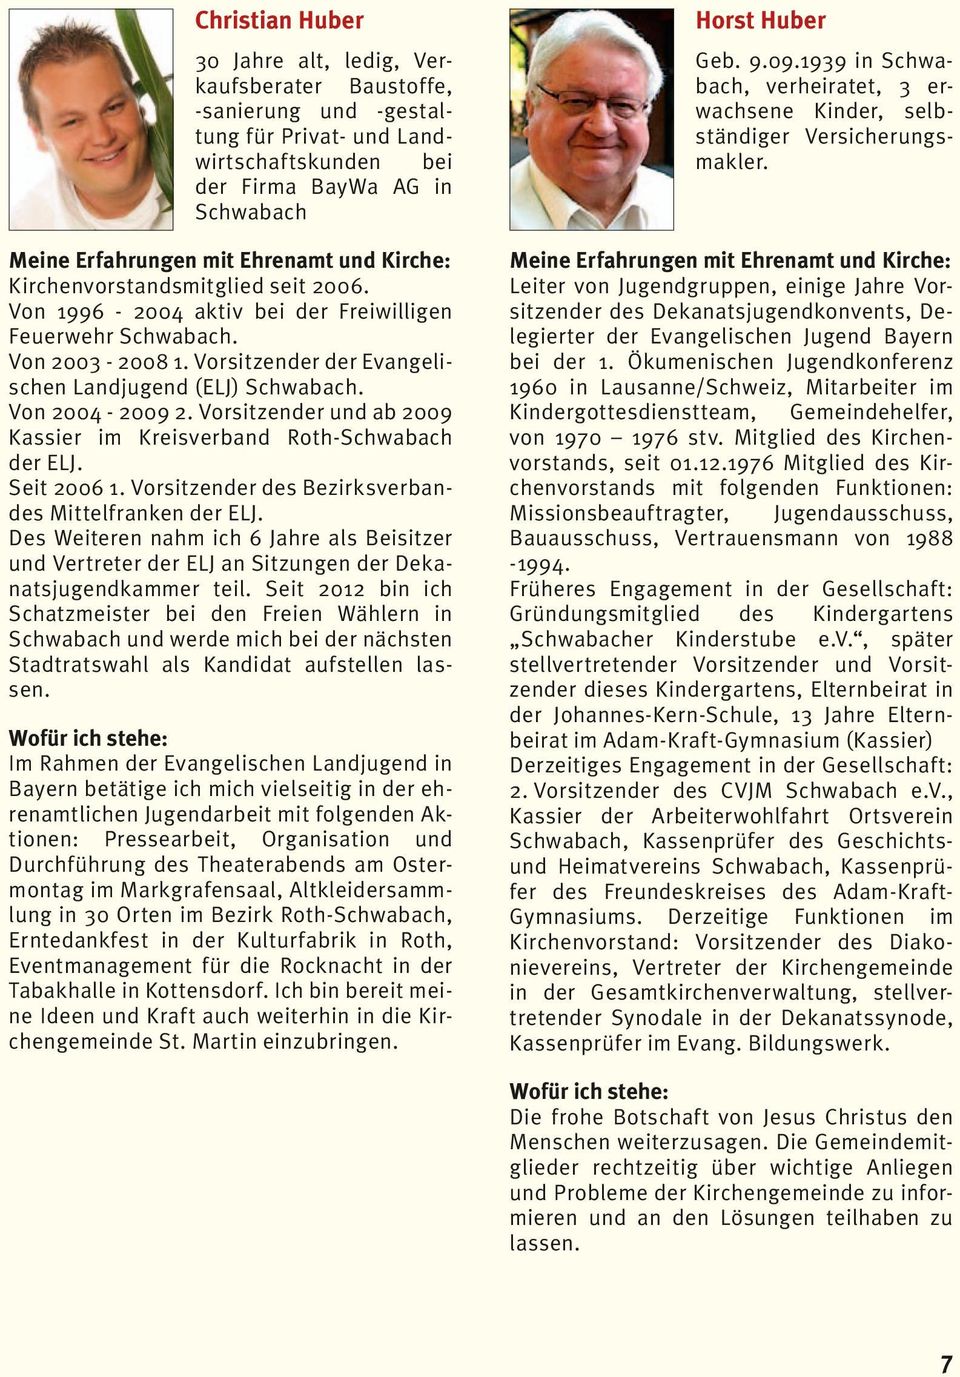 Von 2003-2008 1. Vorsitzender der Evangelischen Landjugend (ELJ) Schwabach. Von 2004-2009 2. Vorsitzender und ab 2009 Kassier im Kreisverband Roth-Schwabach der ELJ. Seit 2006 1.